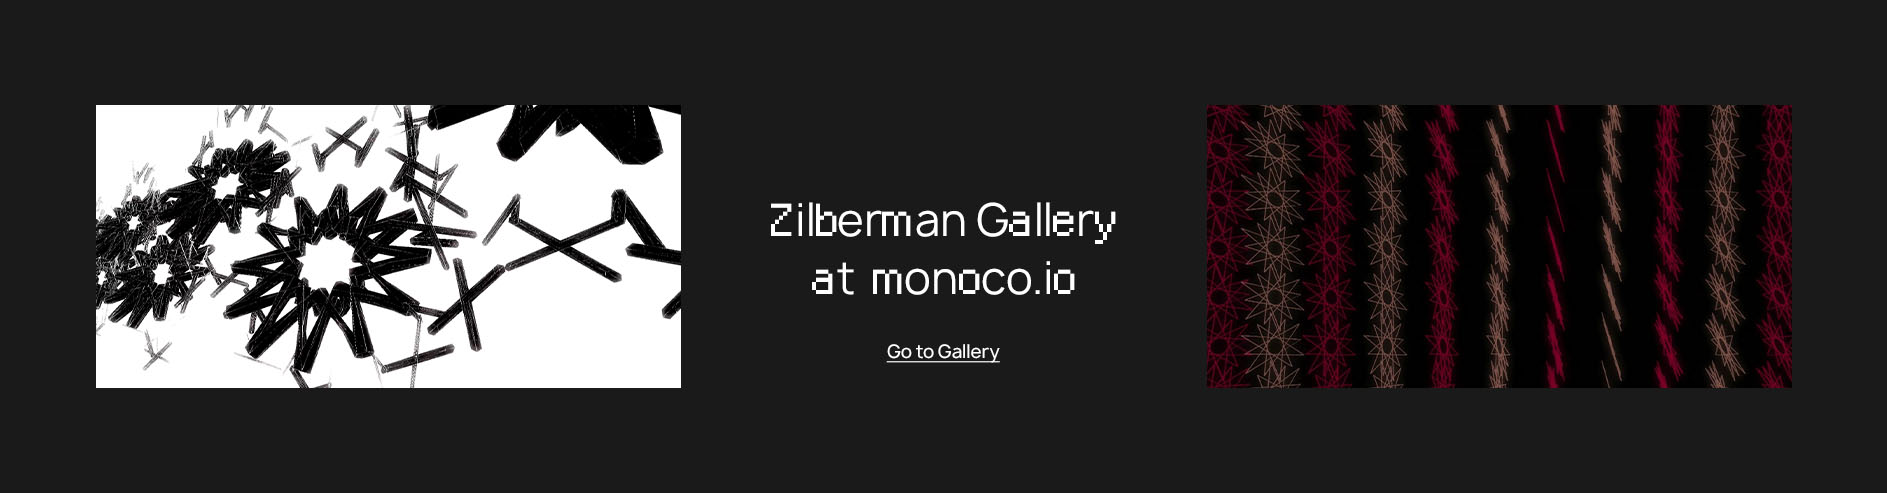 Zilberman Gallery monoco.io'da